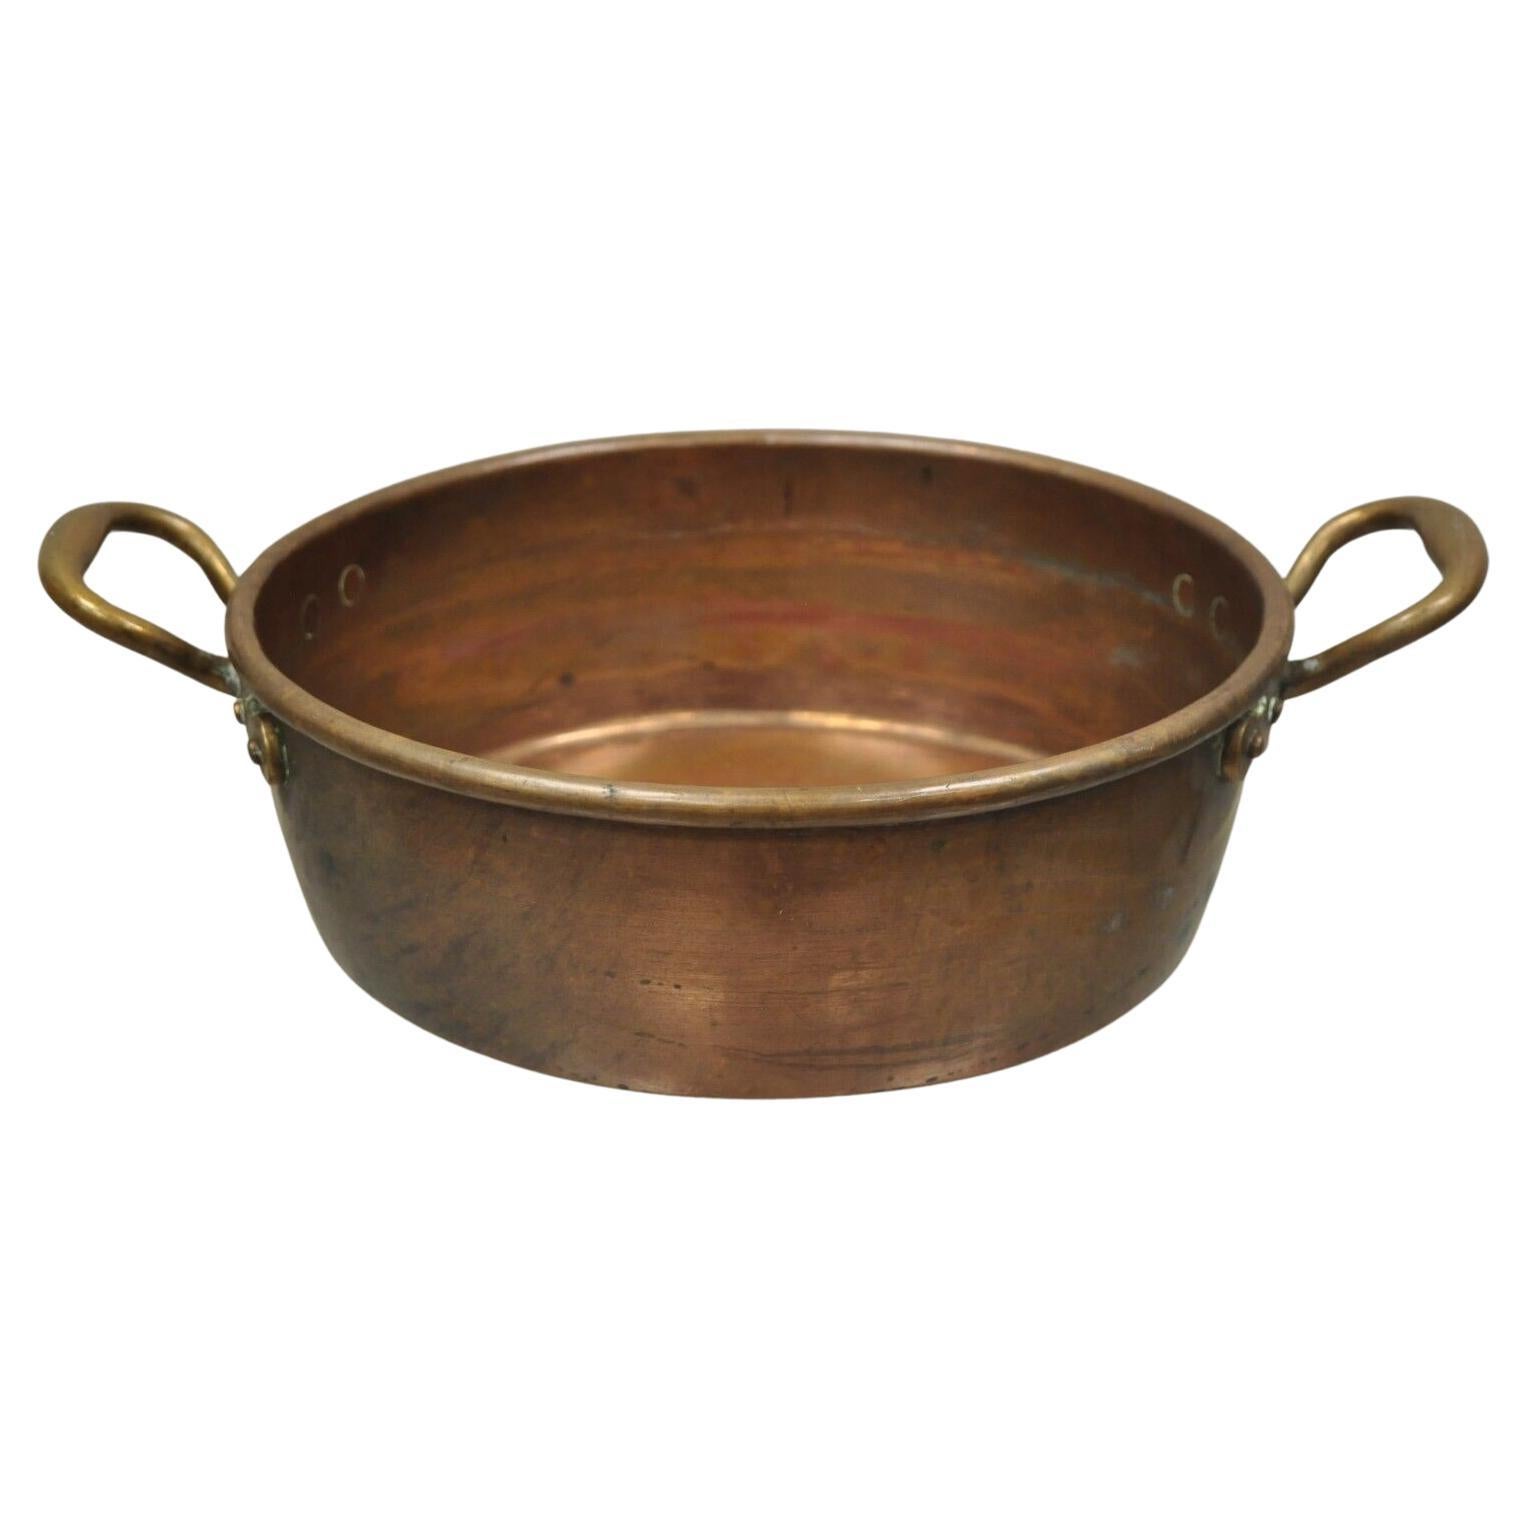 Pot à chaudron ancien en cuivre forgé à la main avec deux poignées jumelles